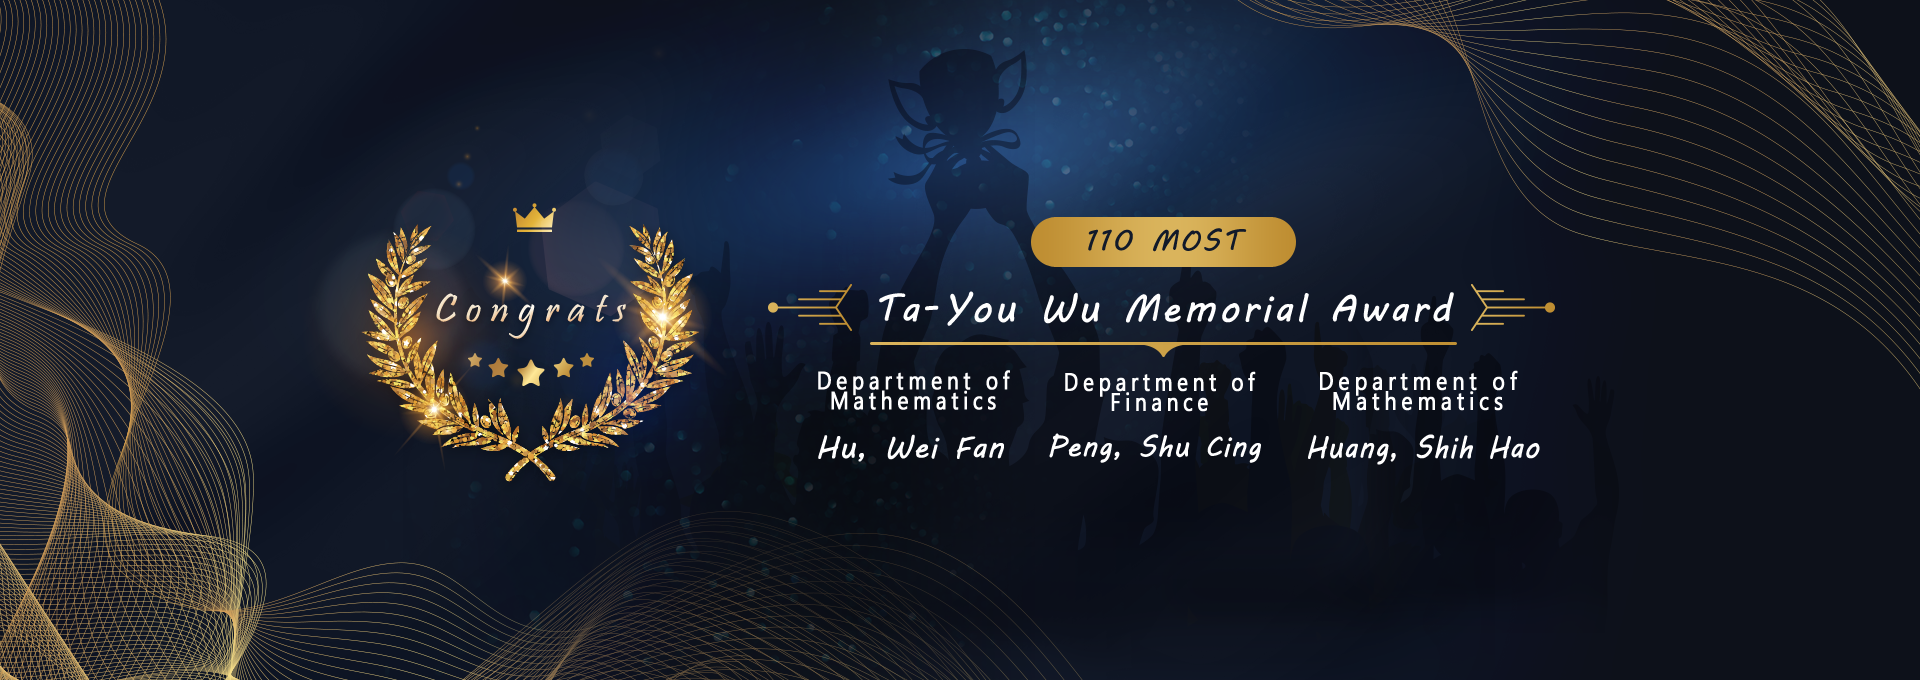 110 Ta-You Wu Memorial Award